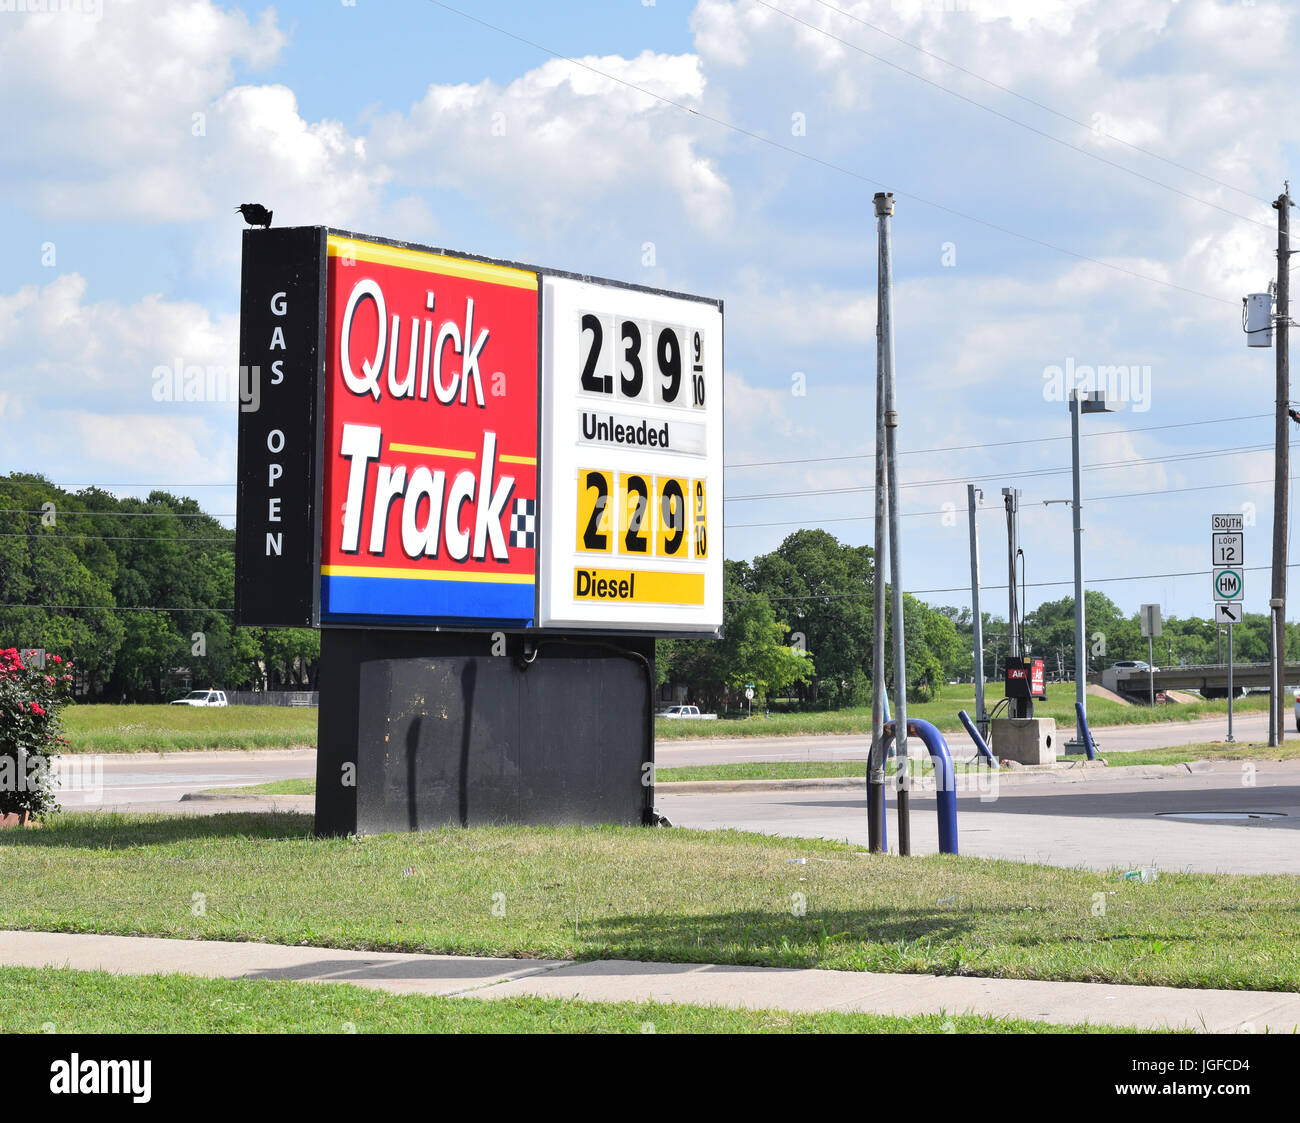 La vía rápida de la Gasolinera Americana cartel con los precios del gas (gas station firmar) Foto de stock